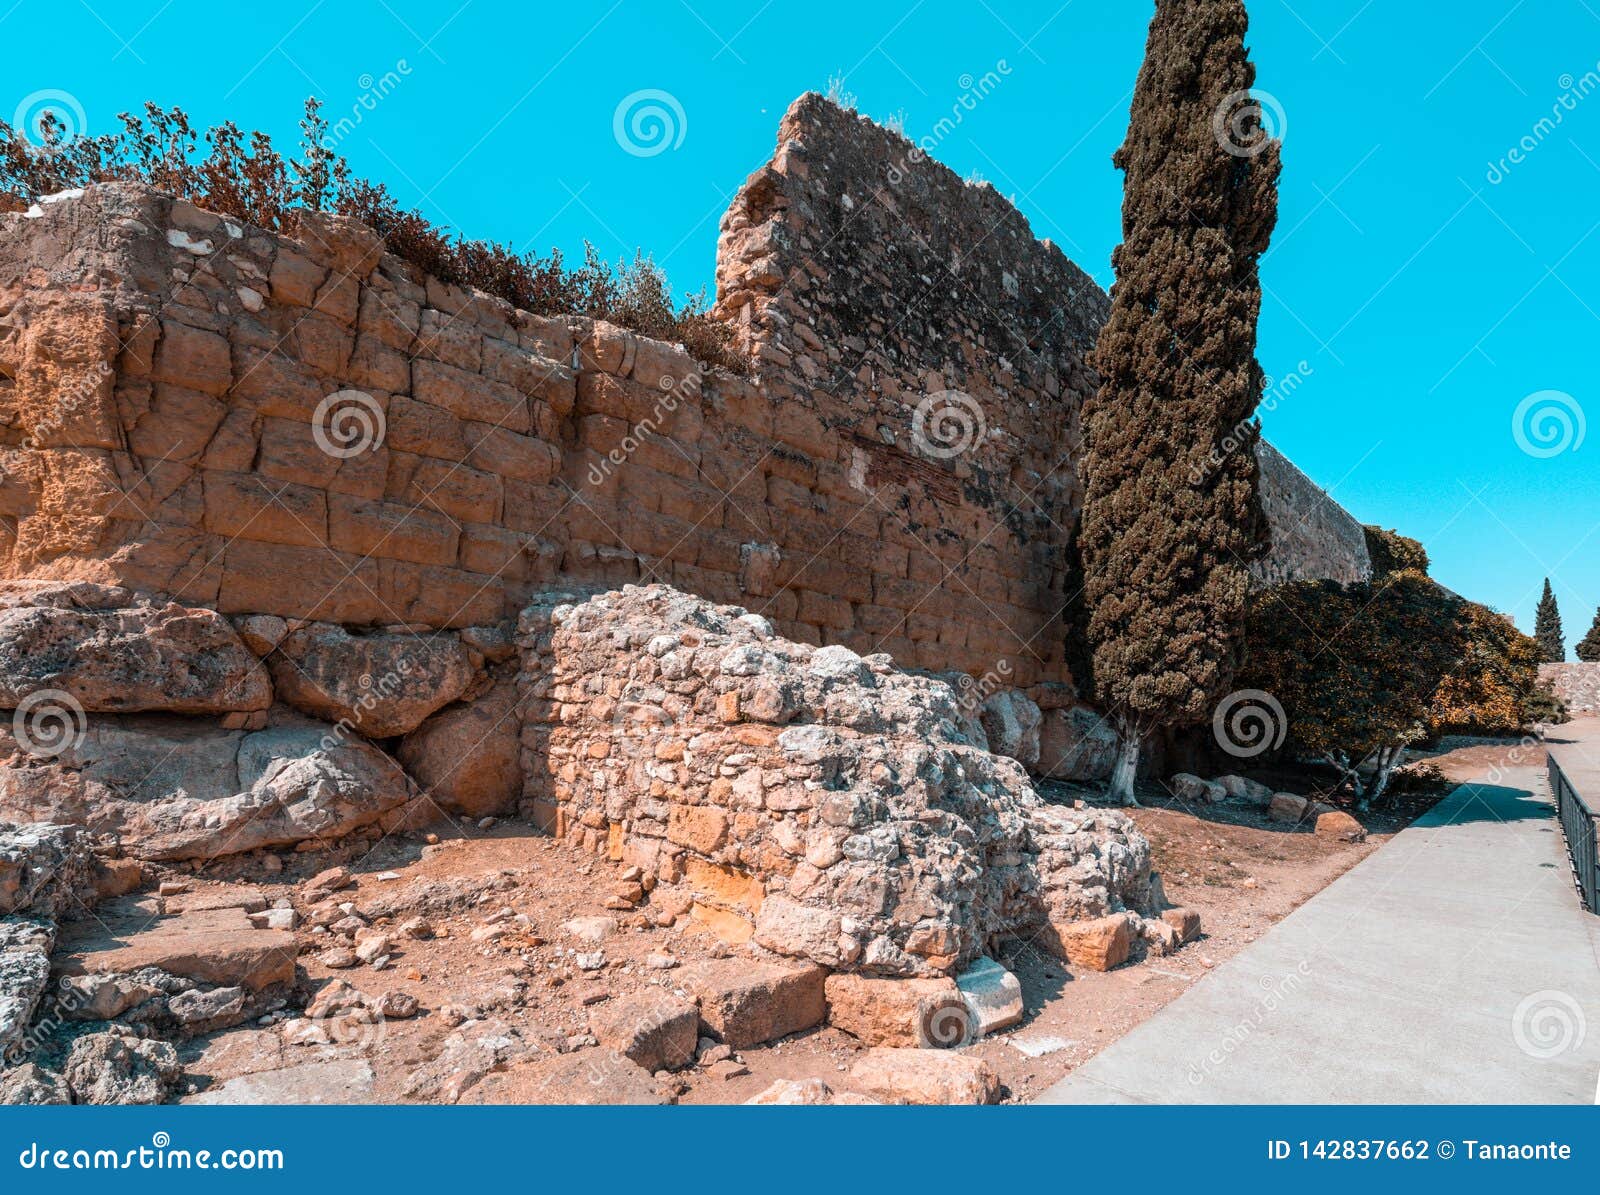 roman walls ruins of ancient imperial tarraco in tarragona